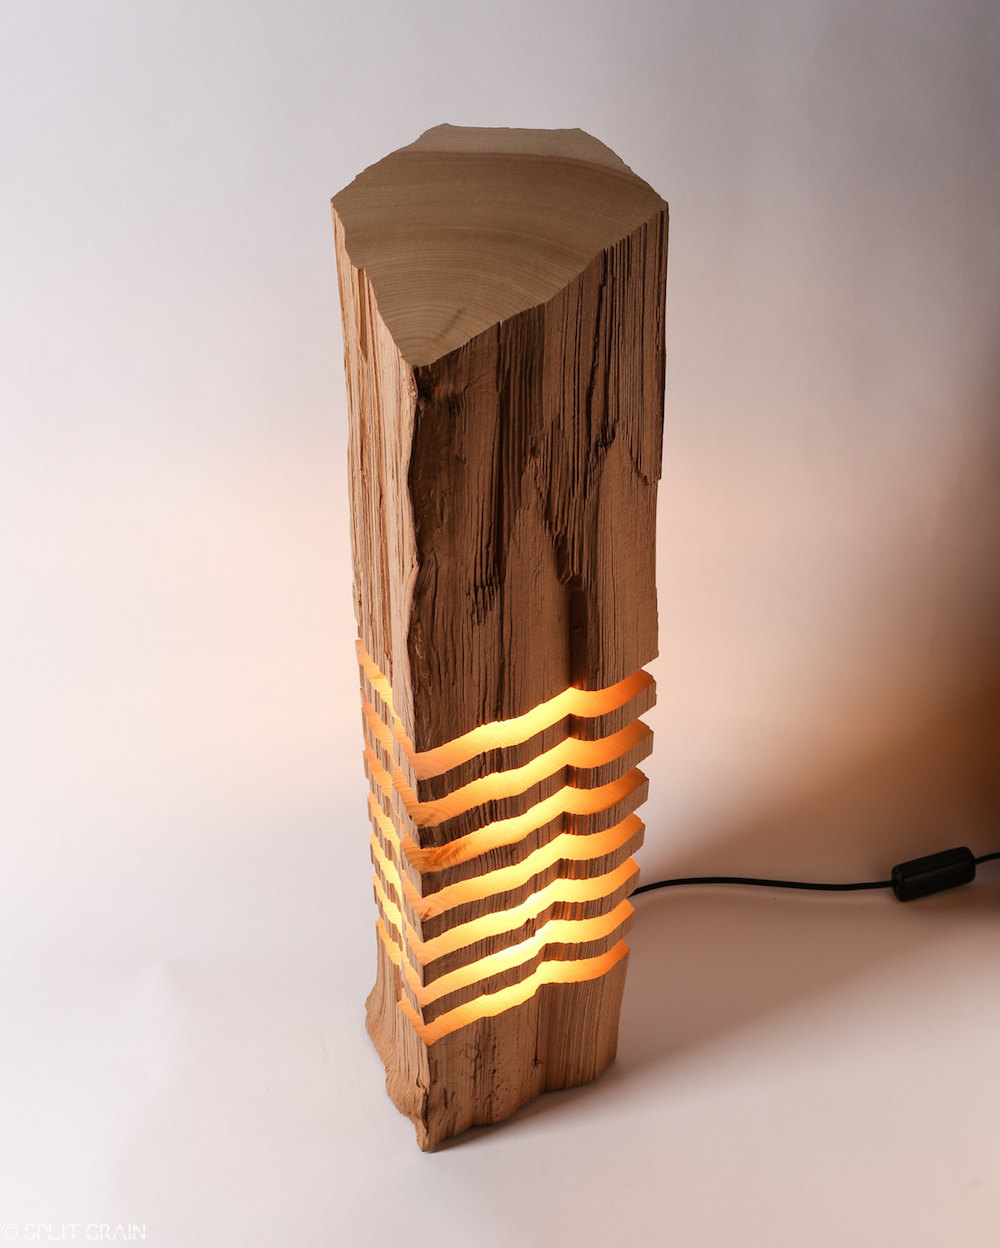 Split Grain: изящные деревянные светильники в стиле минимализм от Пола Фоклера